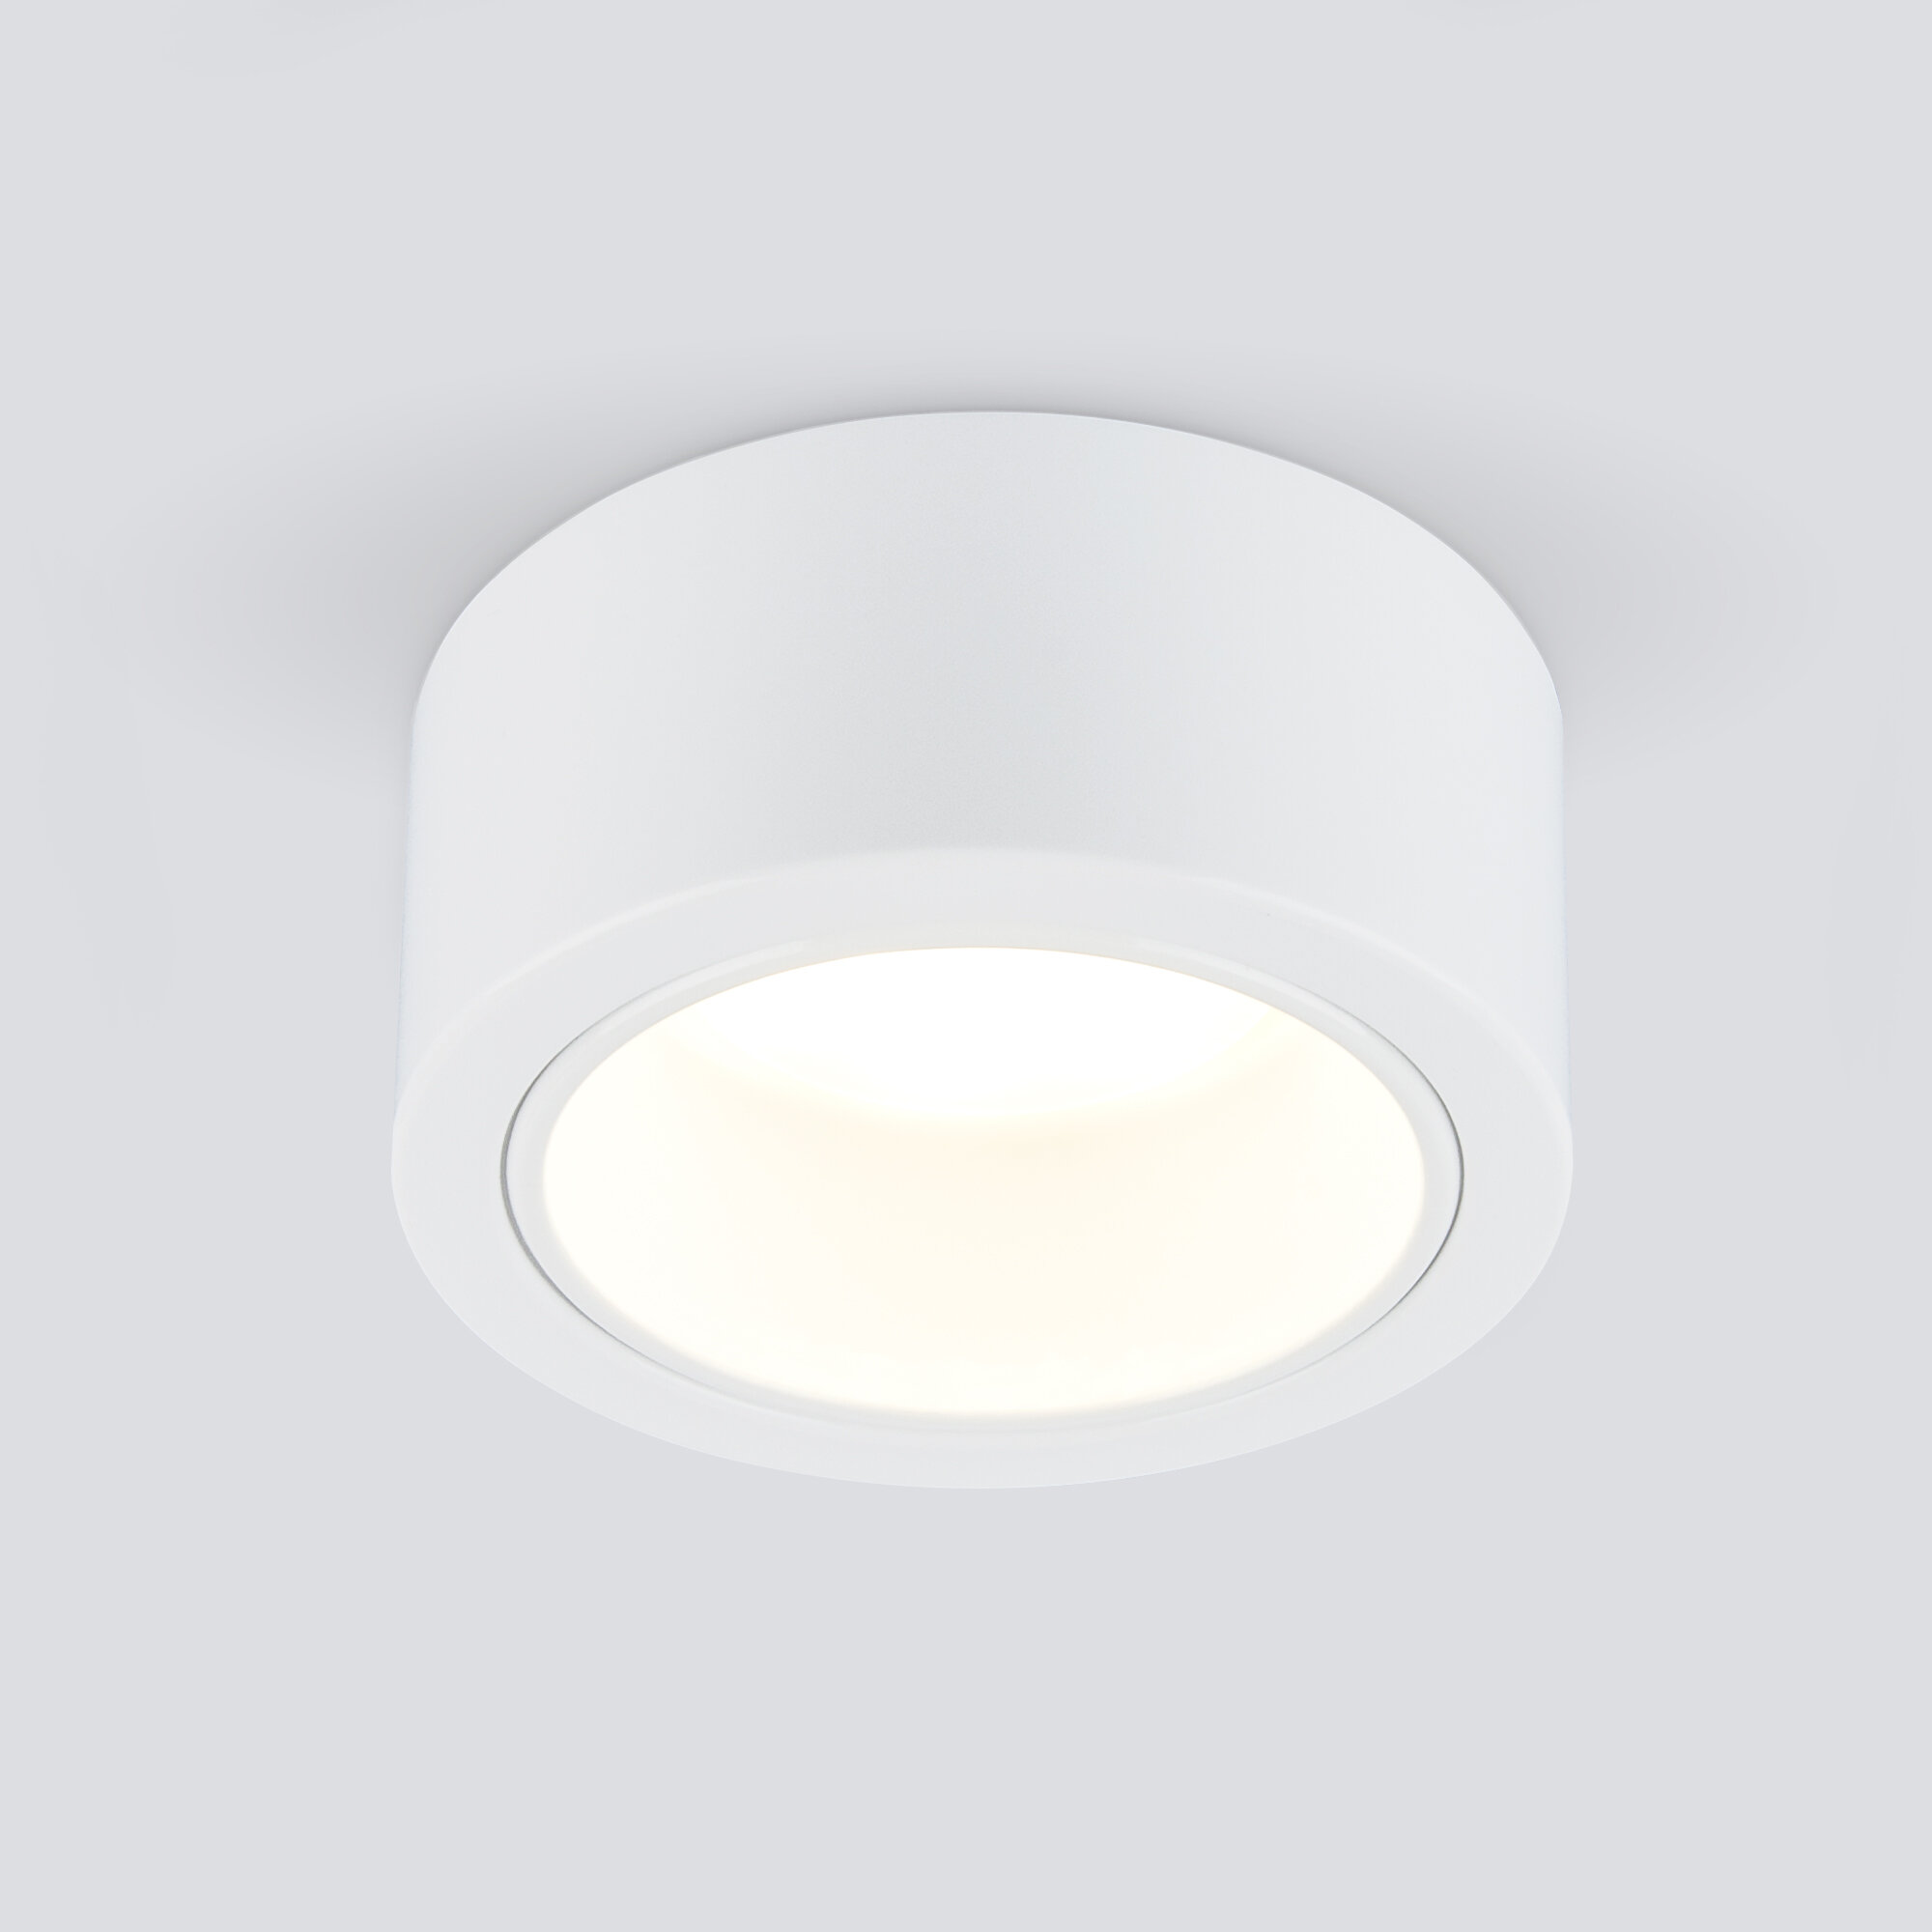 Спот / Накладной потолочный светильник Elektrostandard 1070 GX53 WH белый